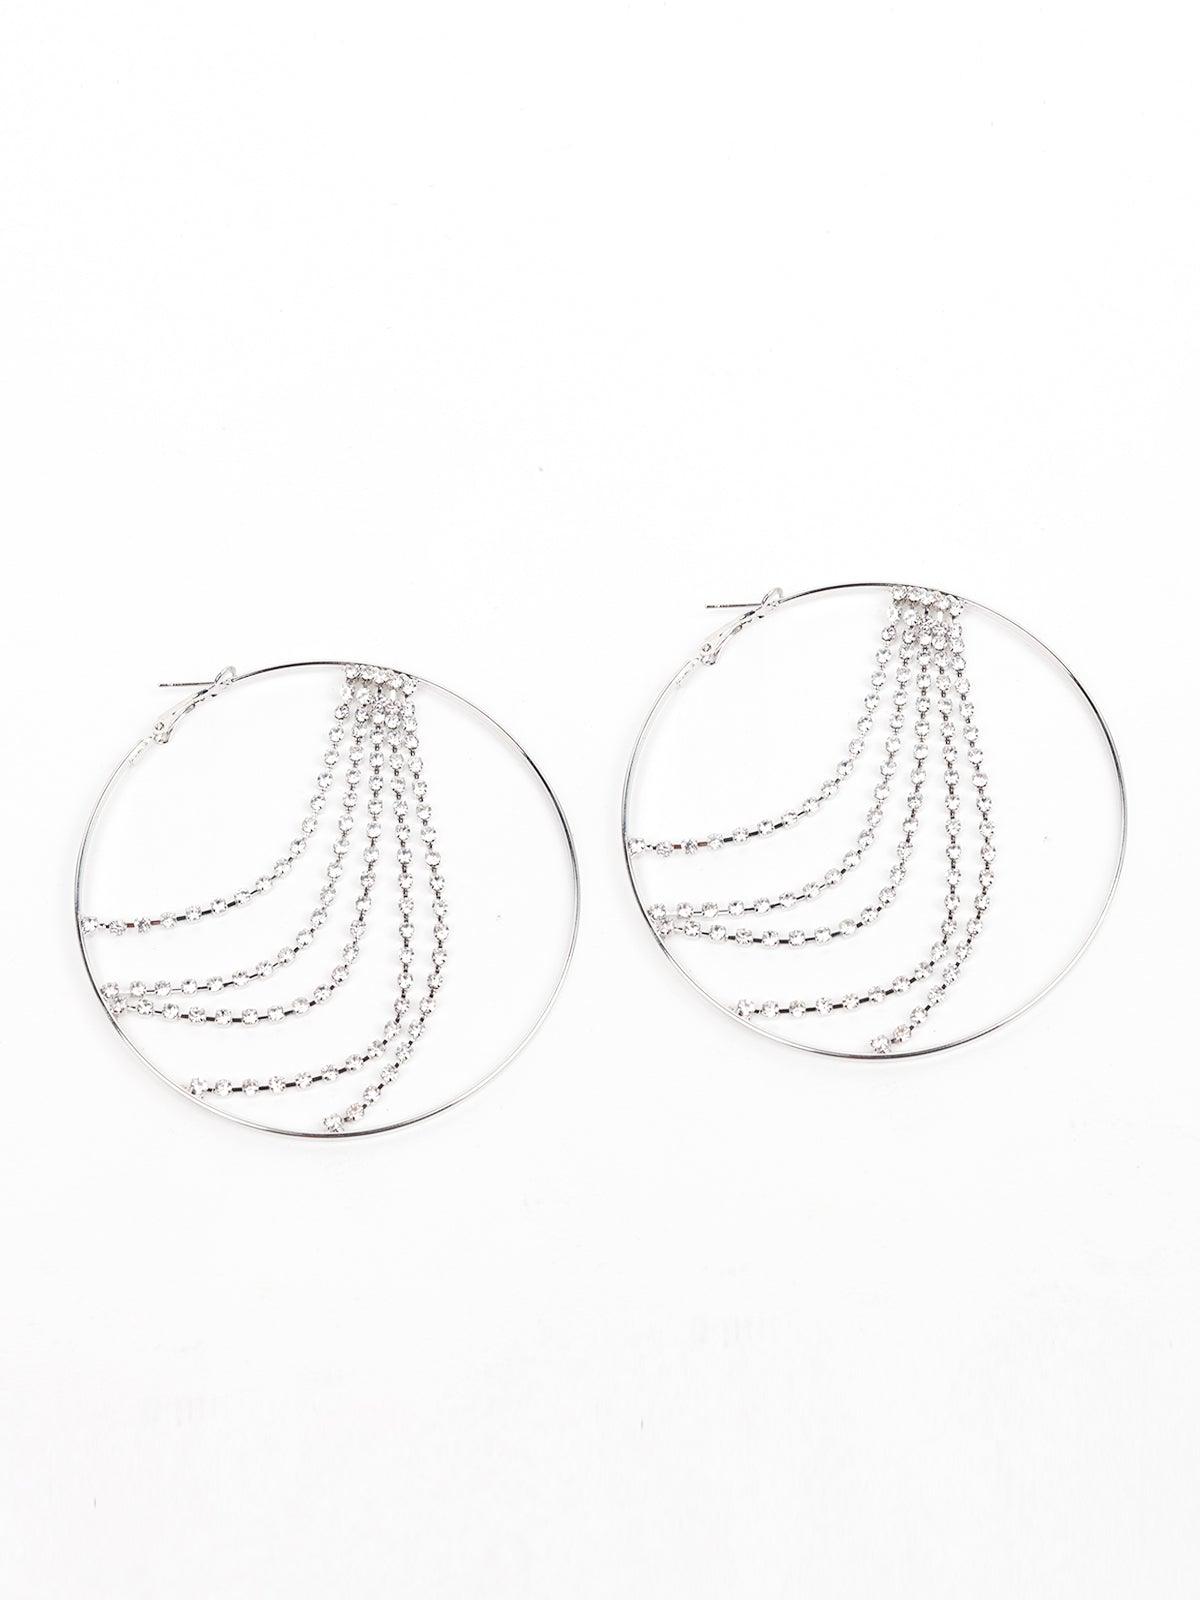 Women's Silver Hoop Earrings With Crystal Strings Embedded - Odette